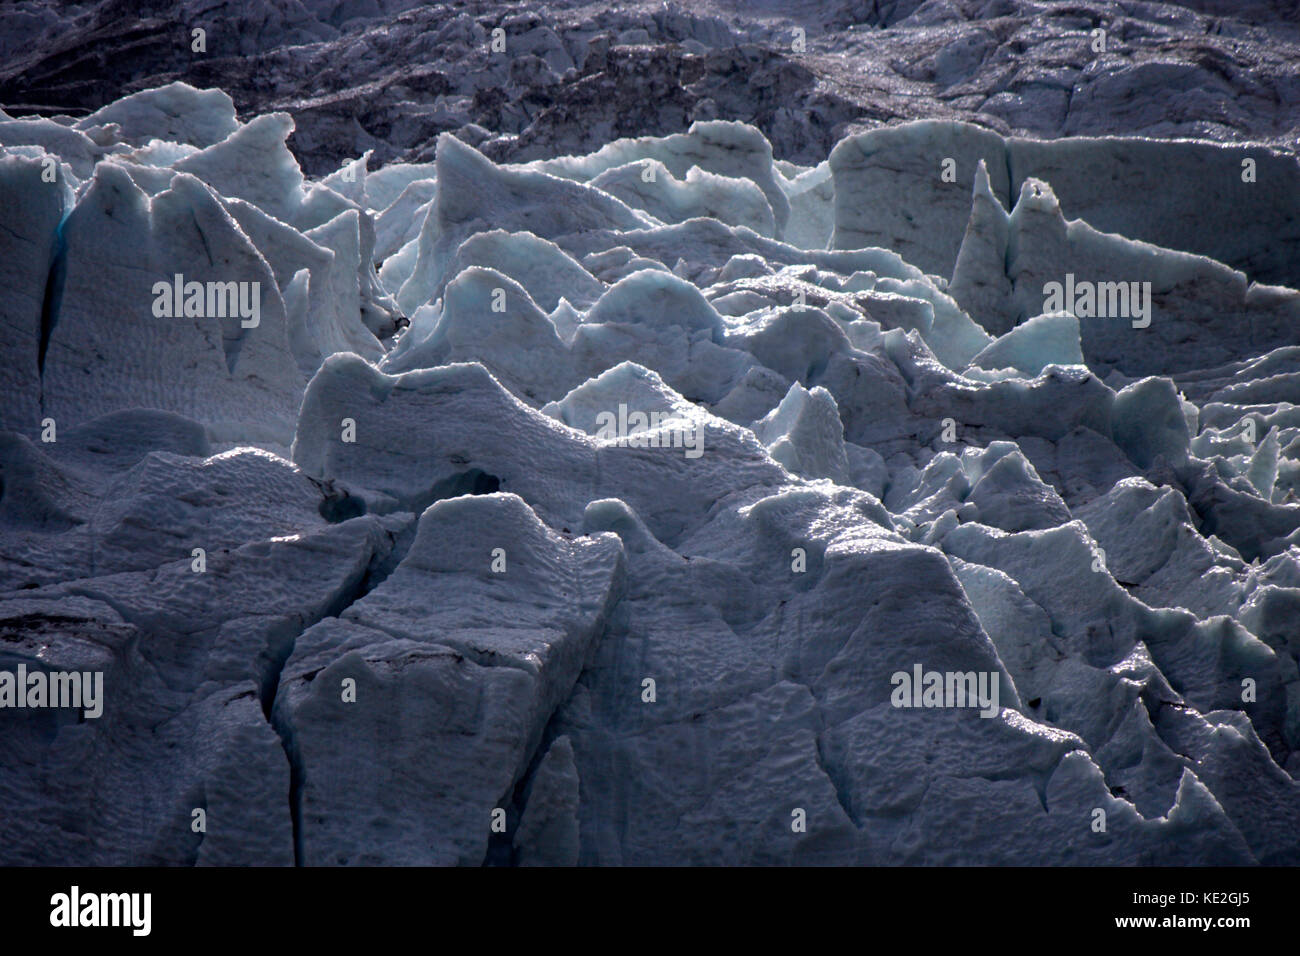 Argentiere Gletscher, Chamonix, Frankreich. Stock Photo